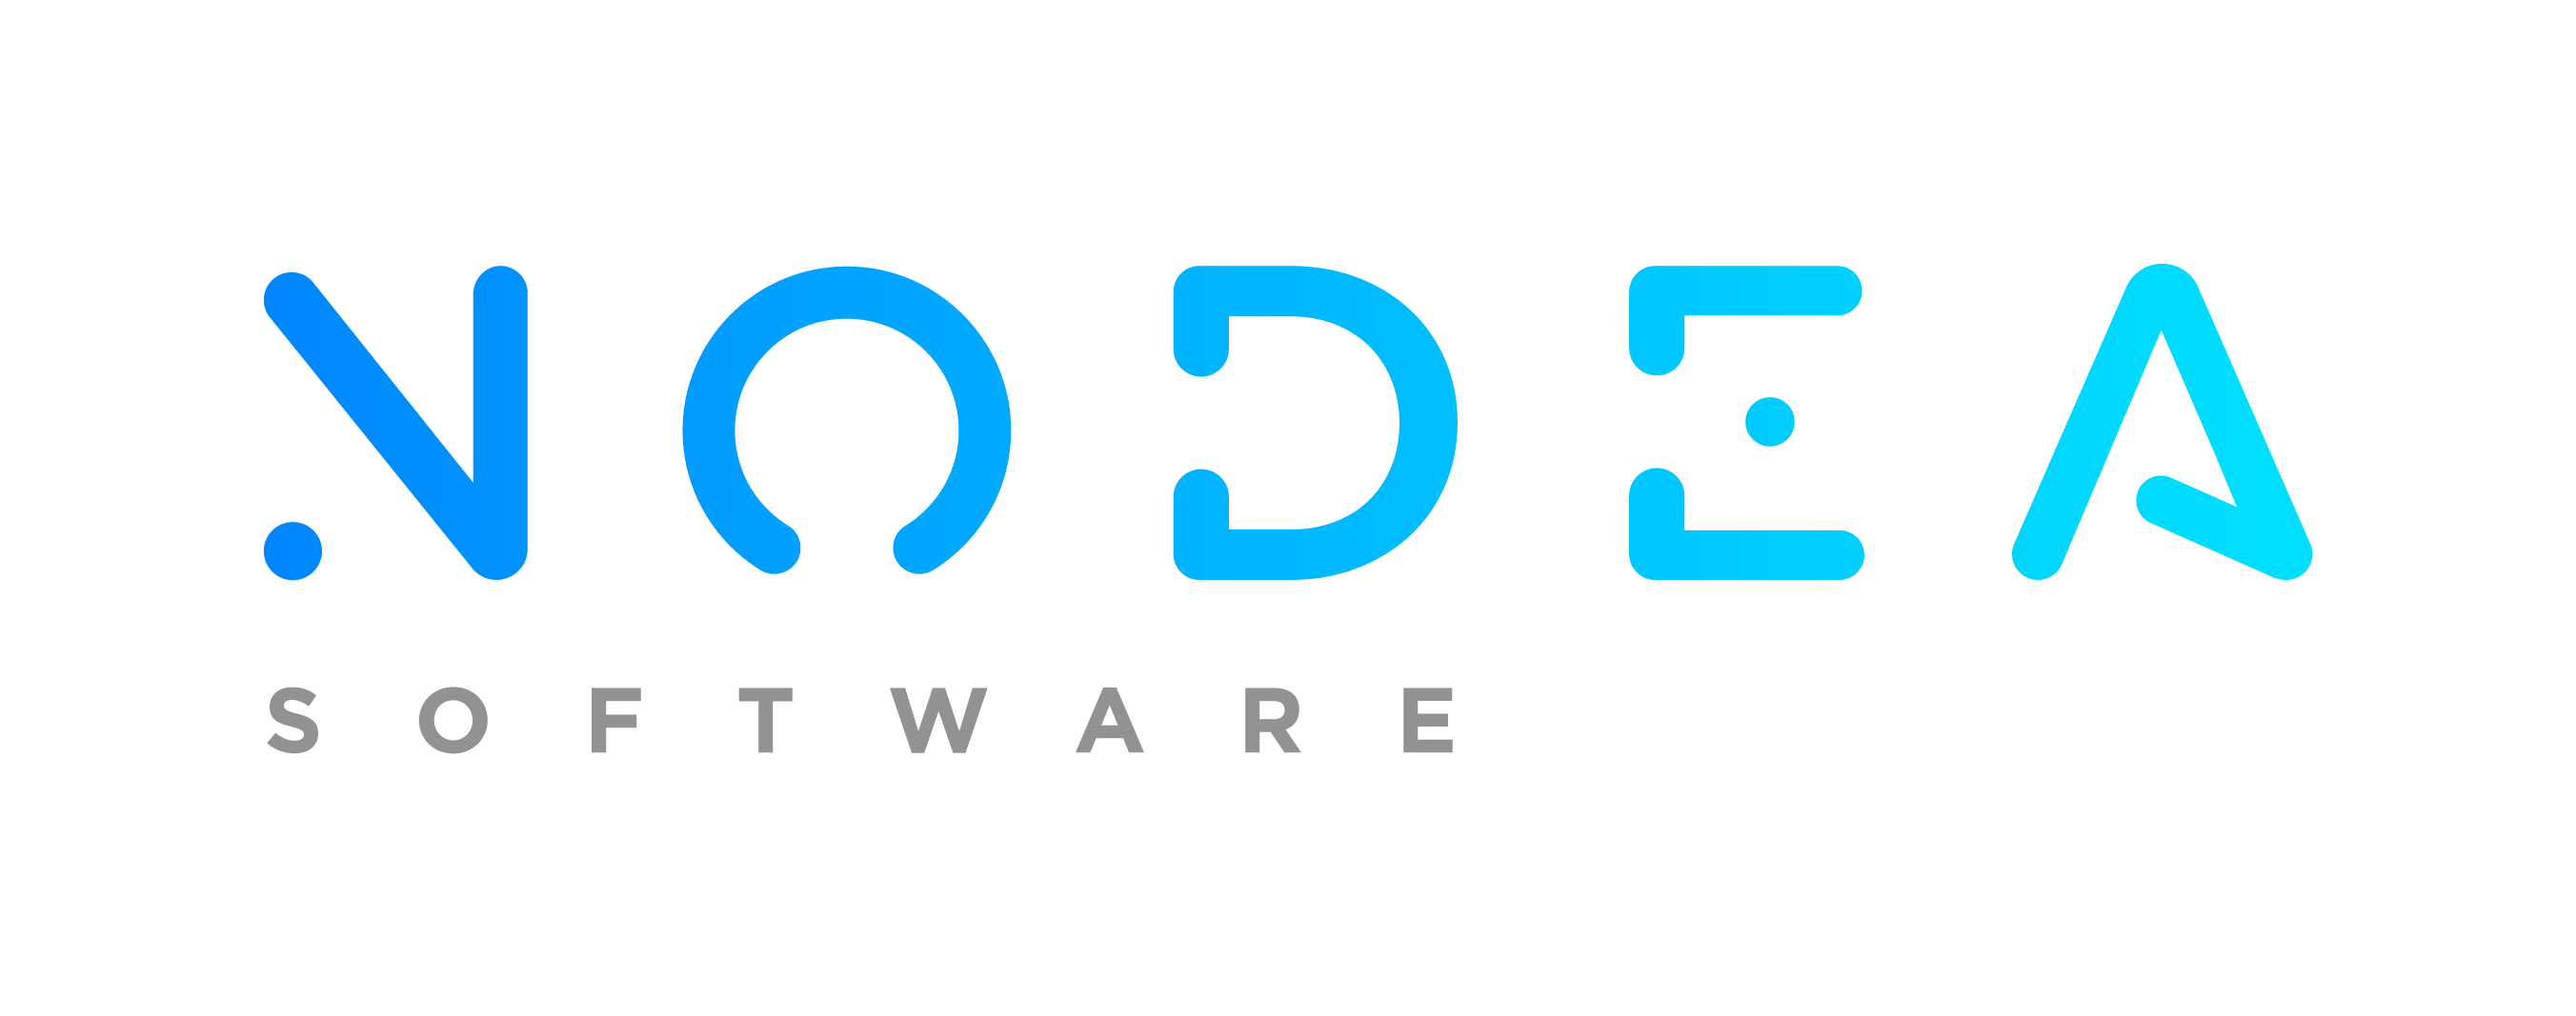 Nodea Software